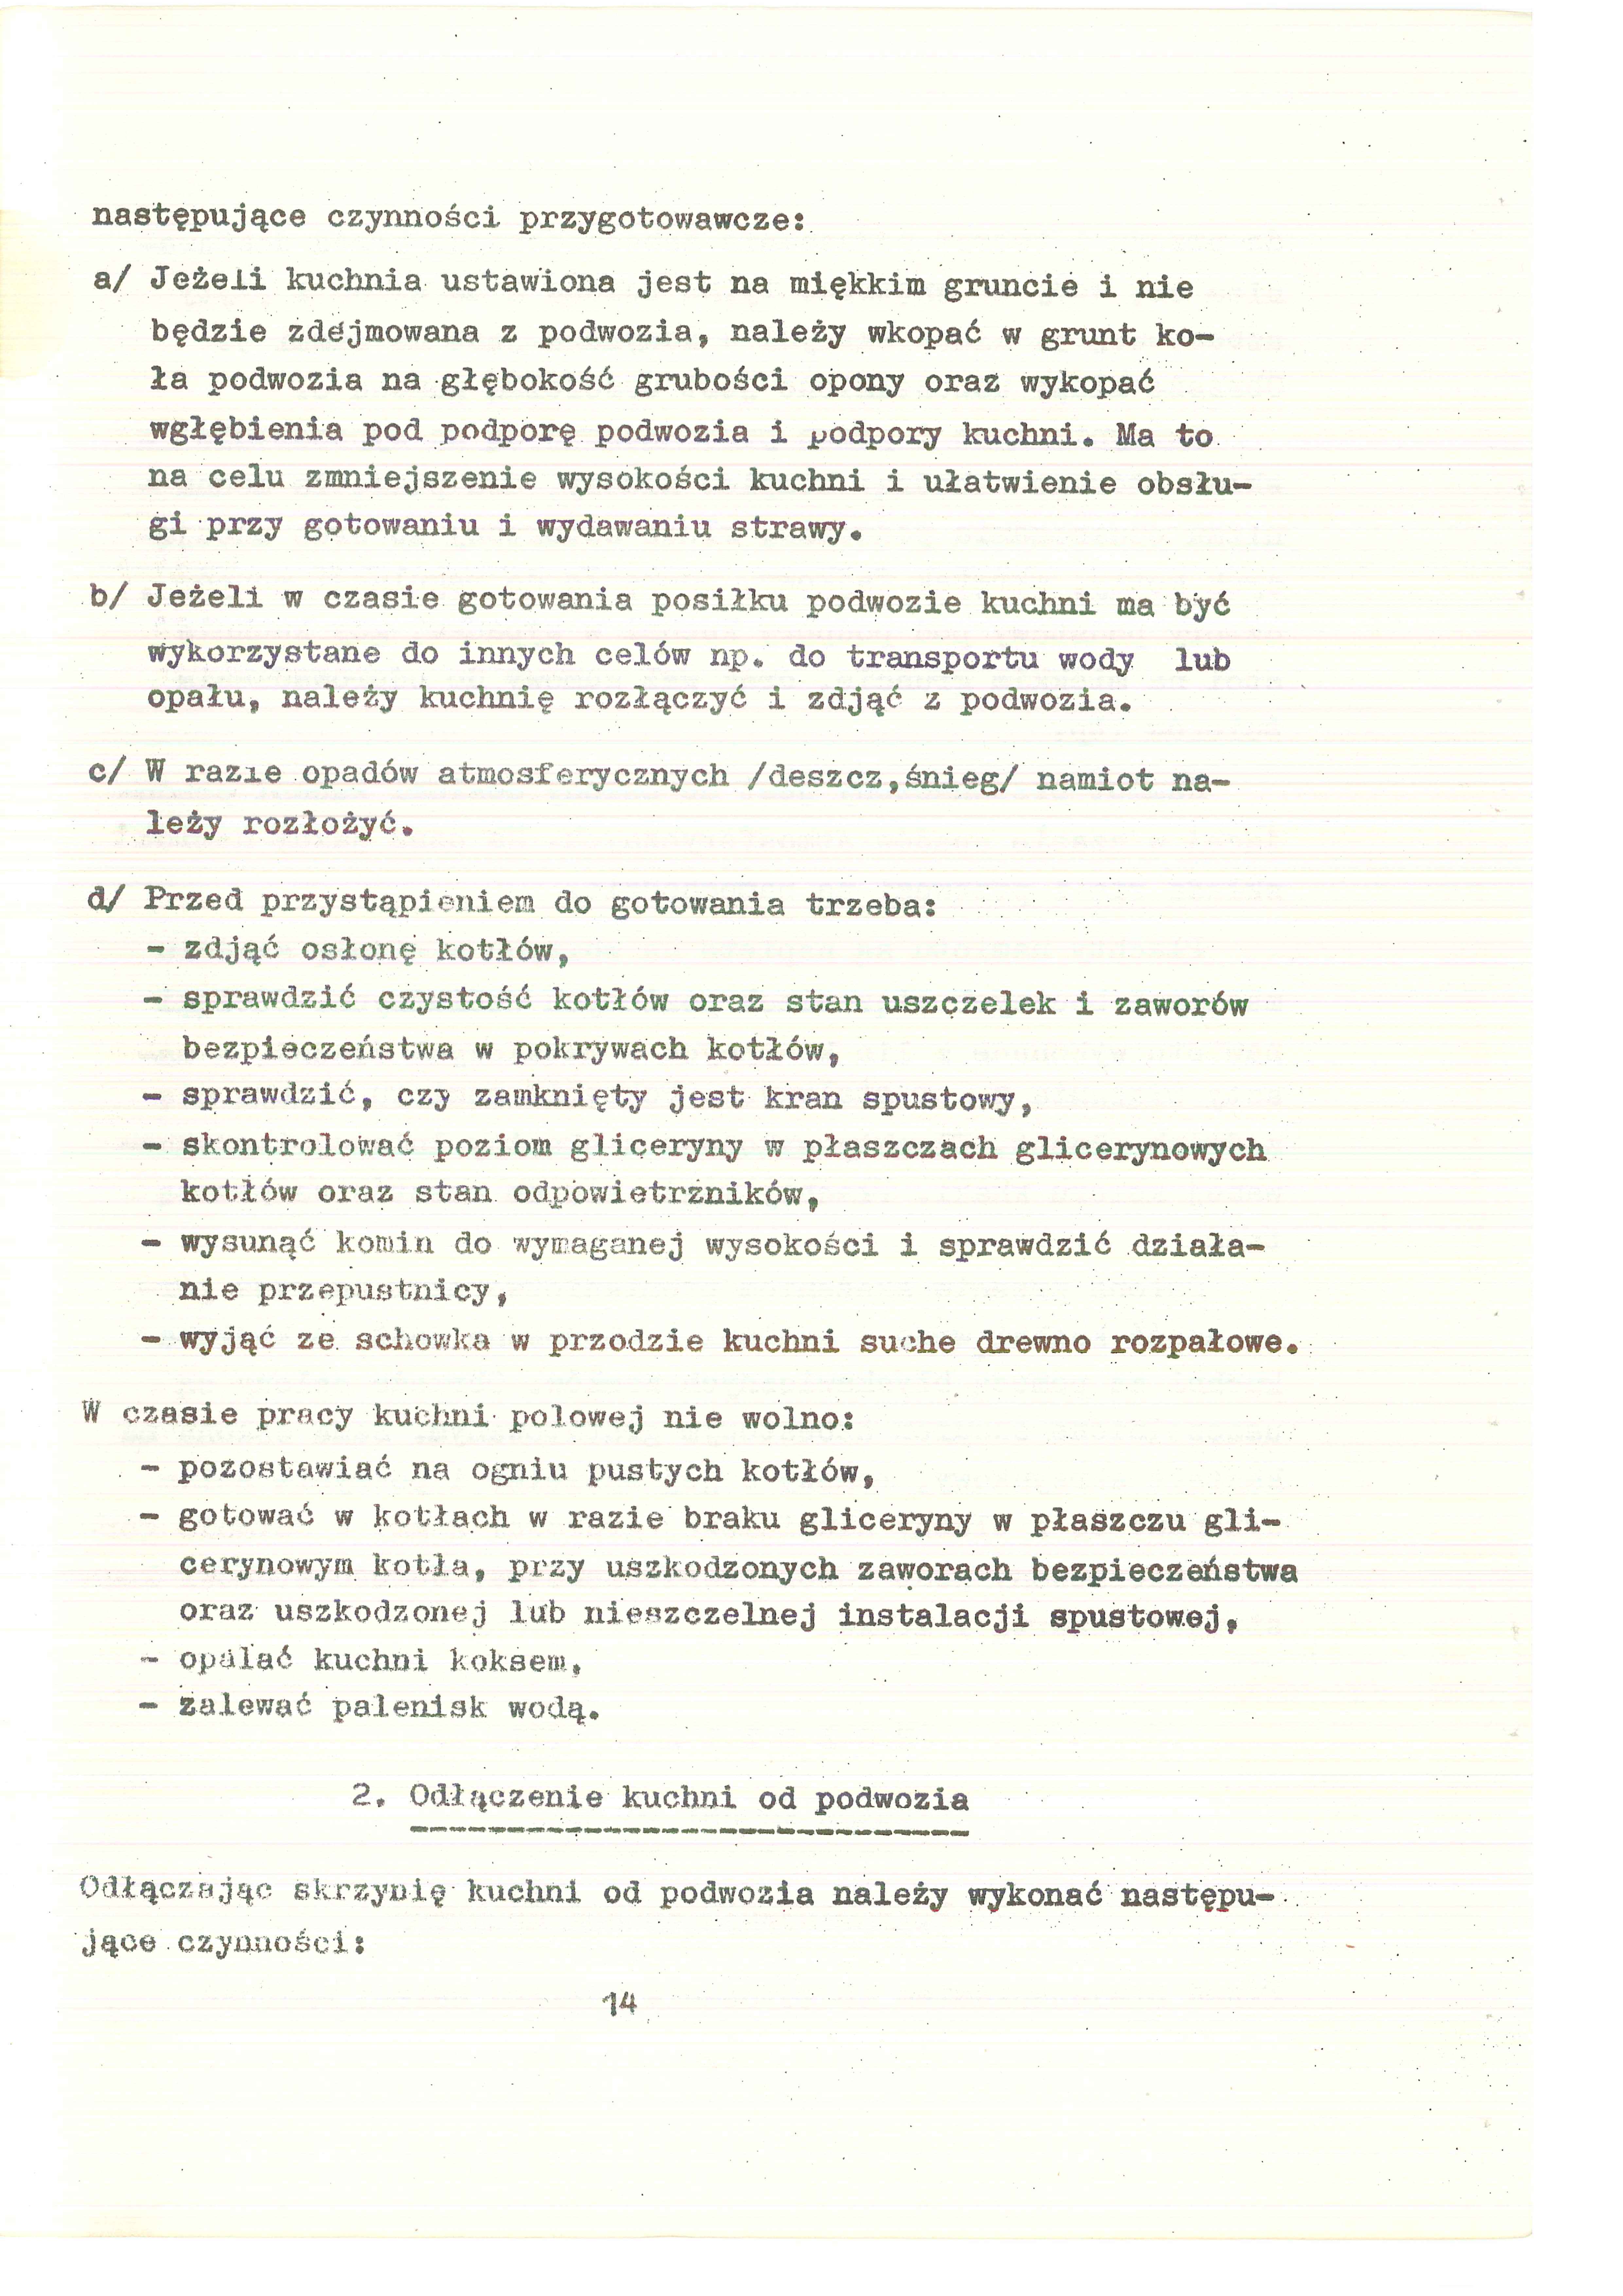 Instrukcja użytkowania kuchni polowej KP-340 1968.03.23 - 20120810053809938_0002.jpg